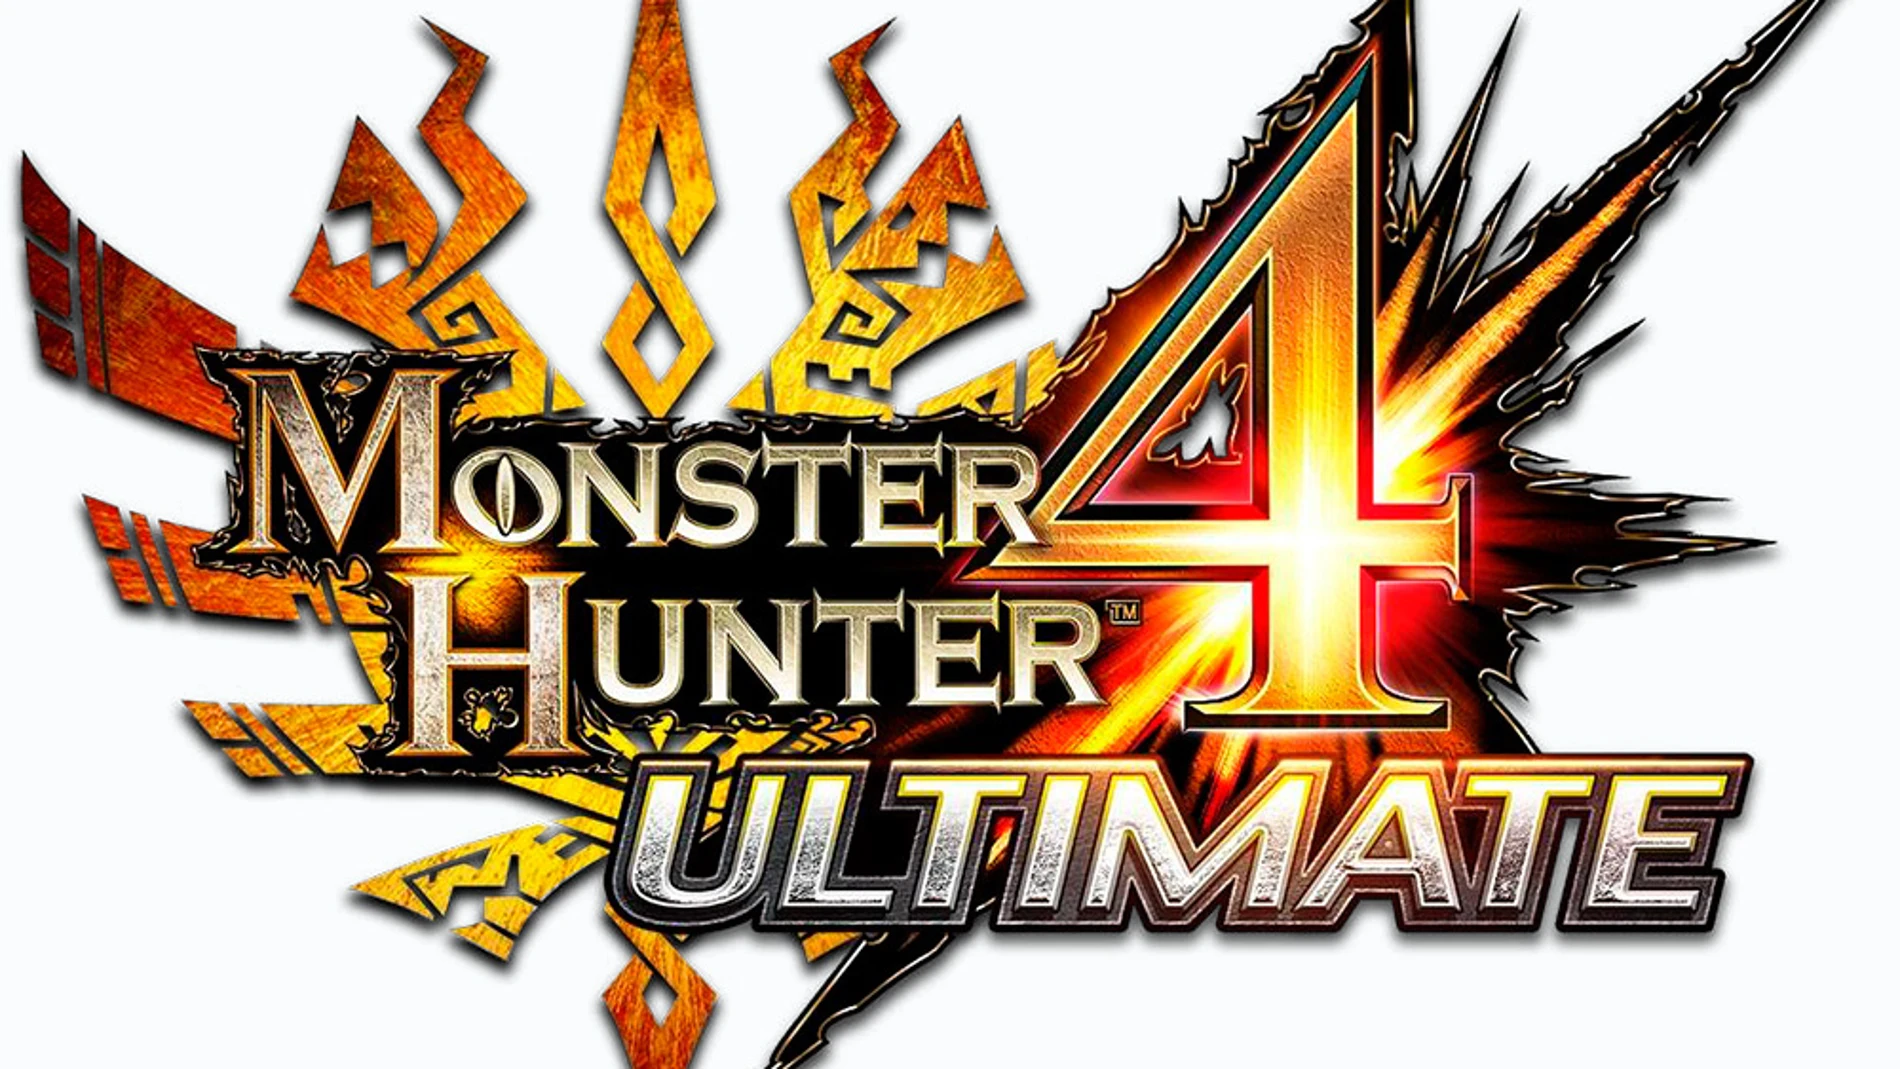 Nintendo se hará cargo de la distribución de Monster Hunter 4 Ultimate en Europa